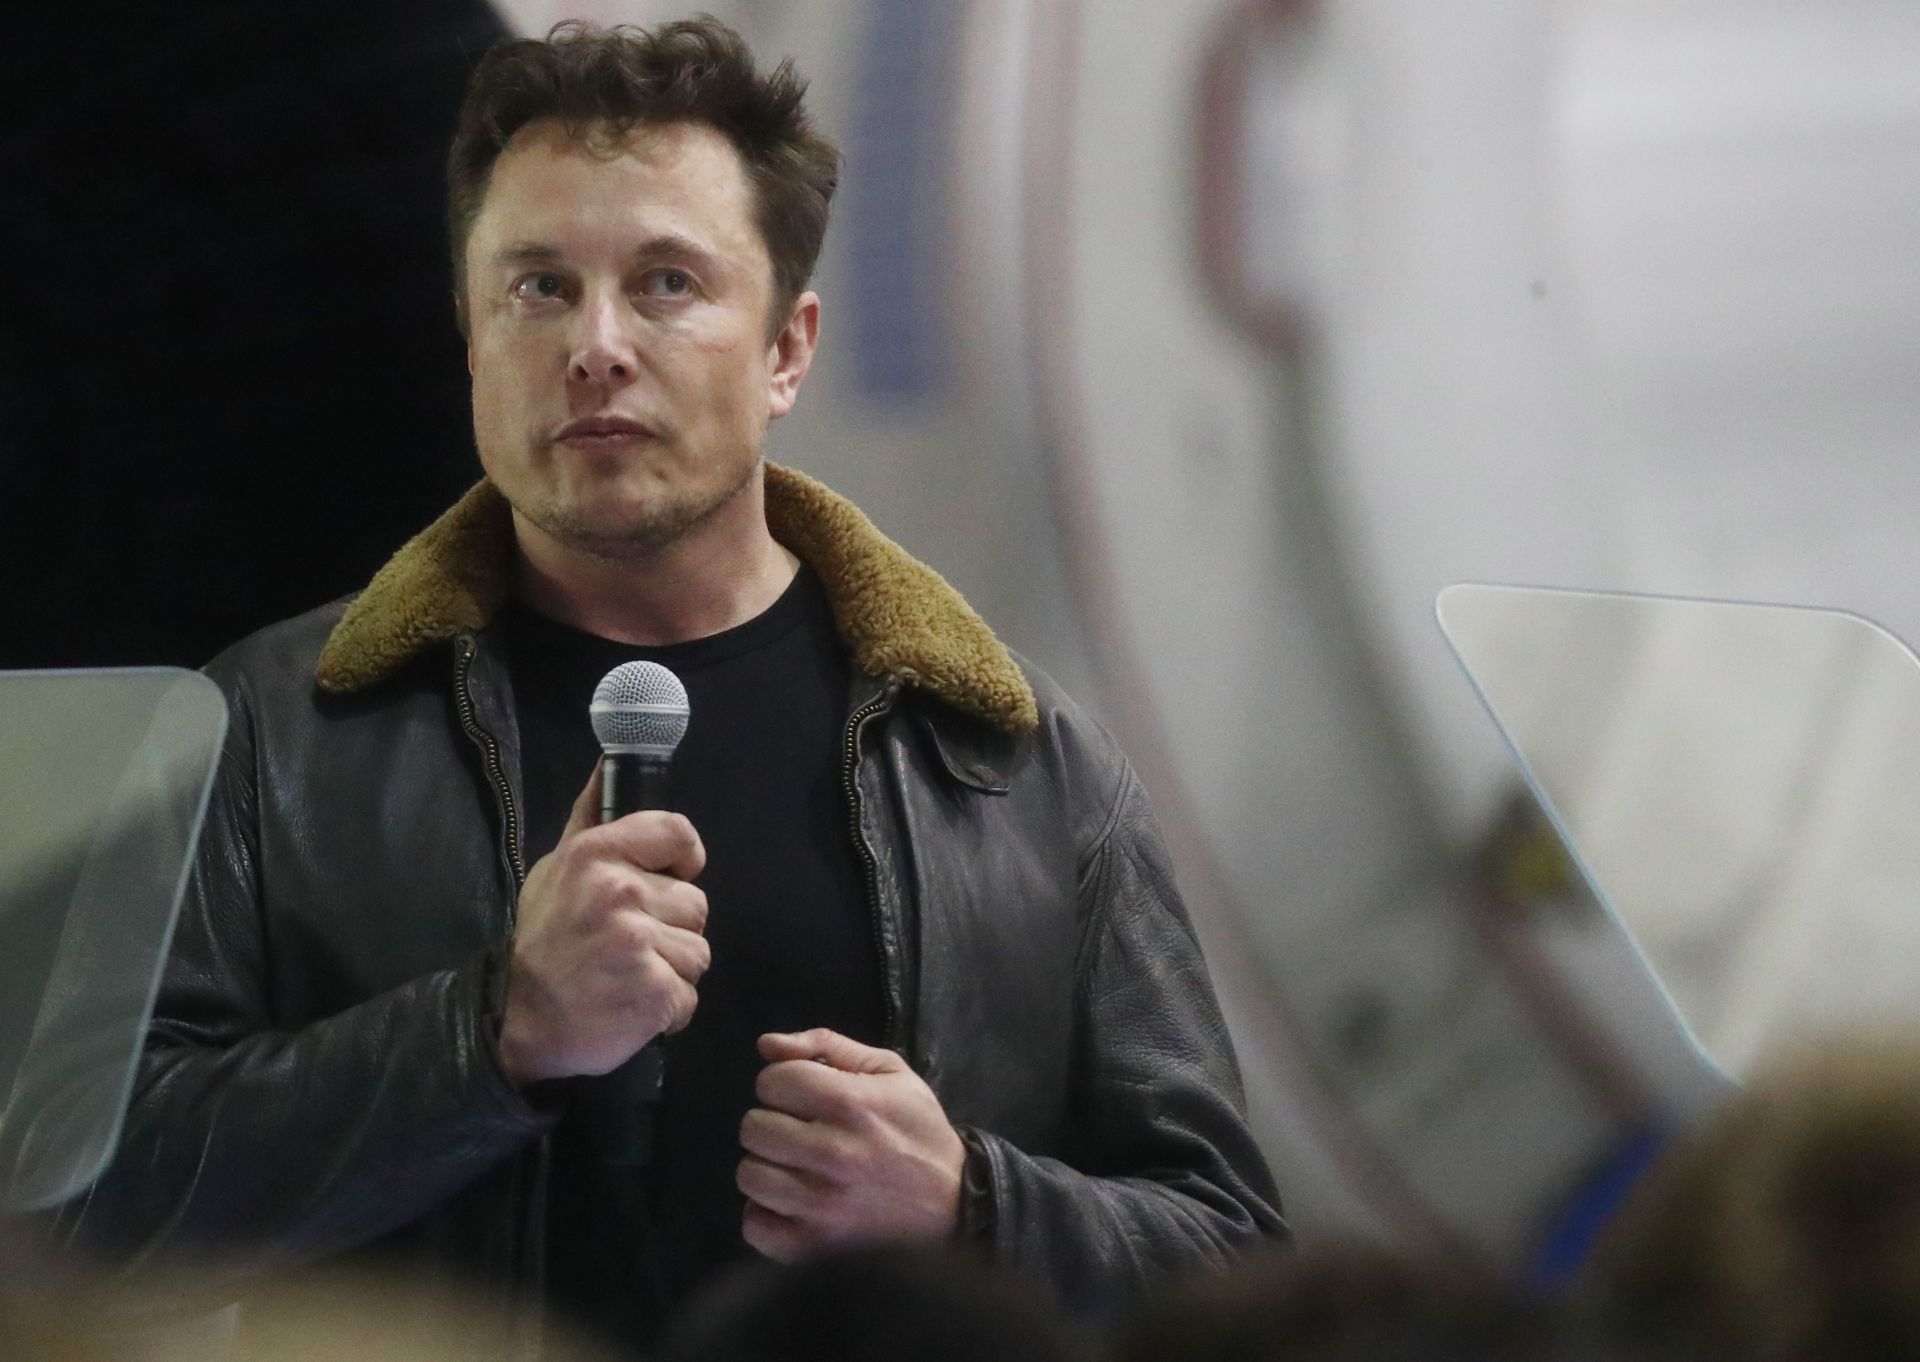 "Микрофабриките" ще бъдат изградени в Tesla Grohmann Automation в Германия, посочи Илон Мъск